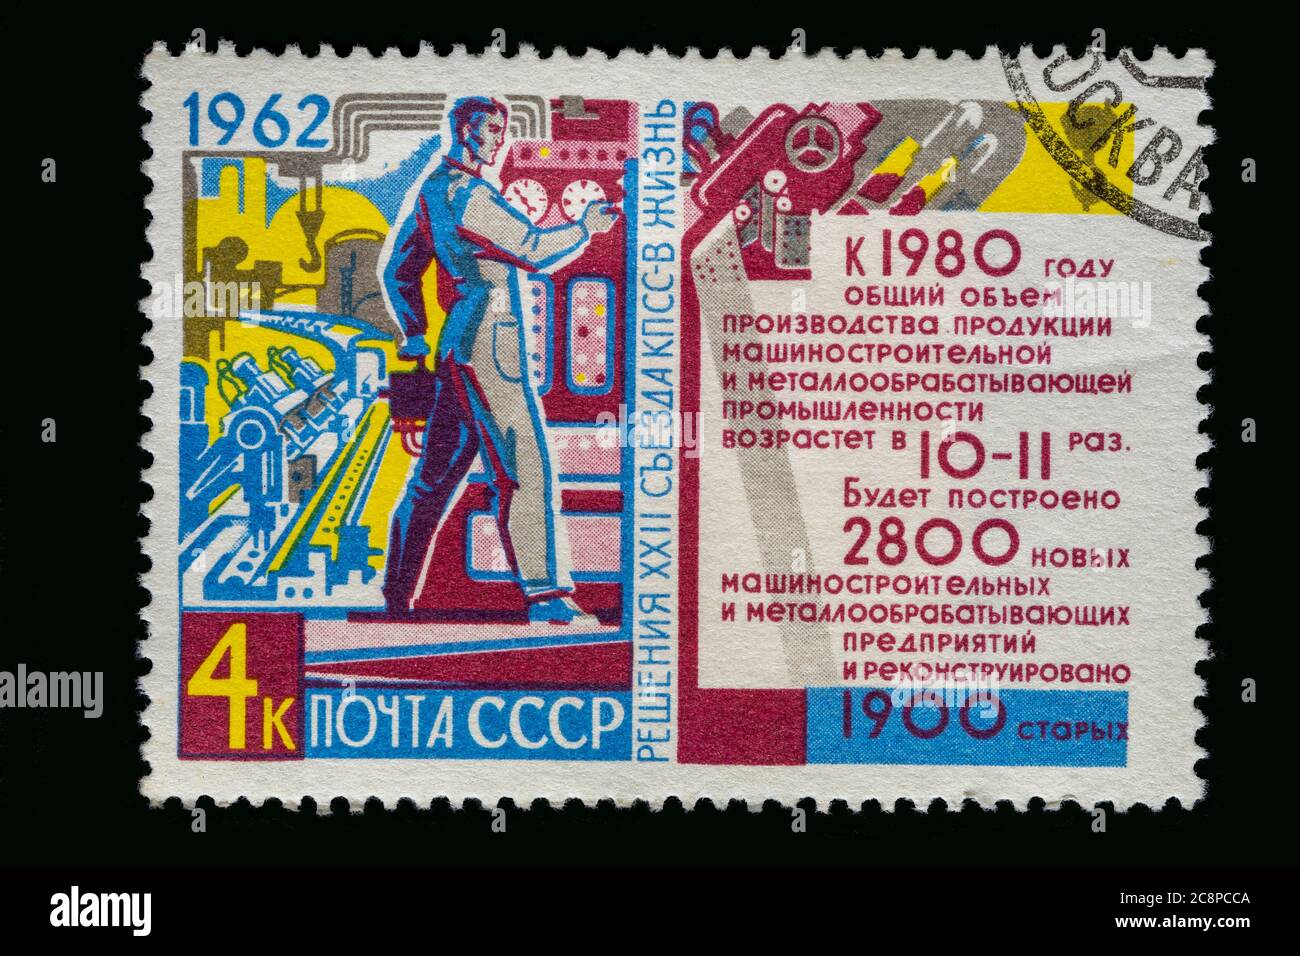 Annata russa annullata francobollo circa 1962. Uno di un insieme di sei persone al lavoro tema. Timbro colorato e brillante con bordo scuro. Foto Stock